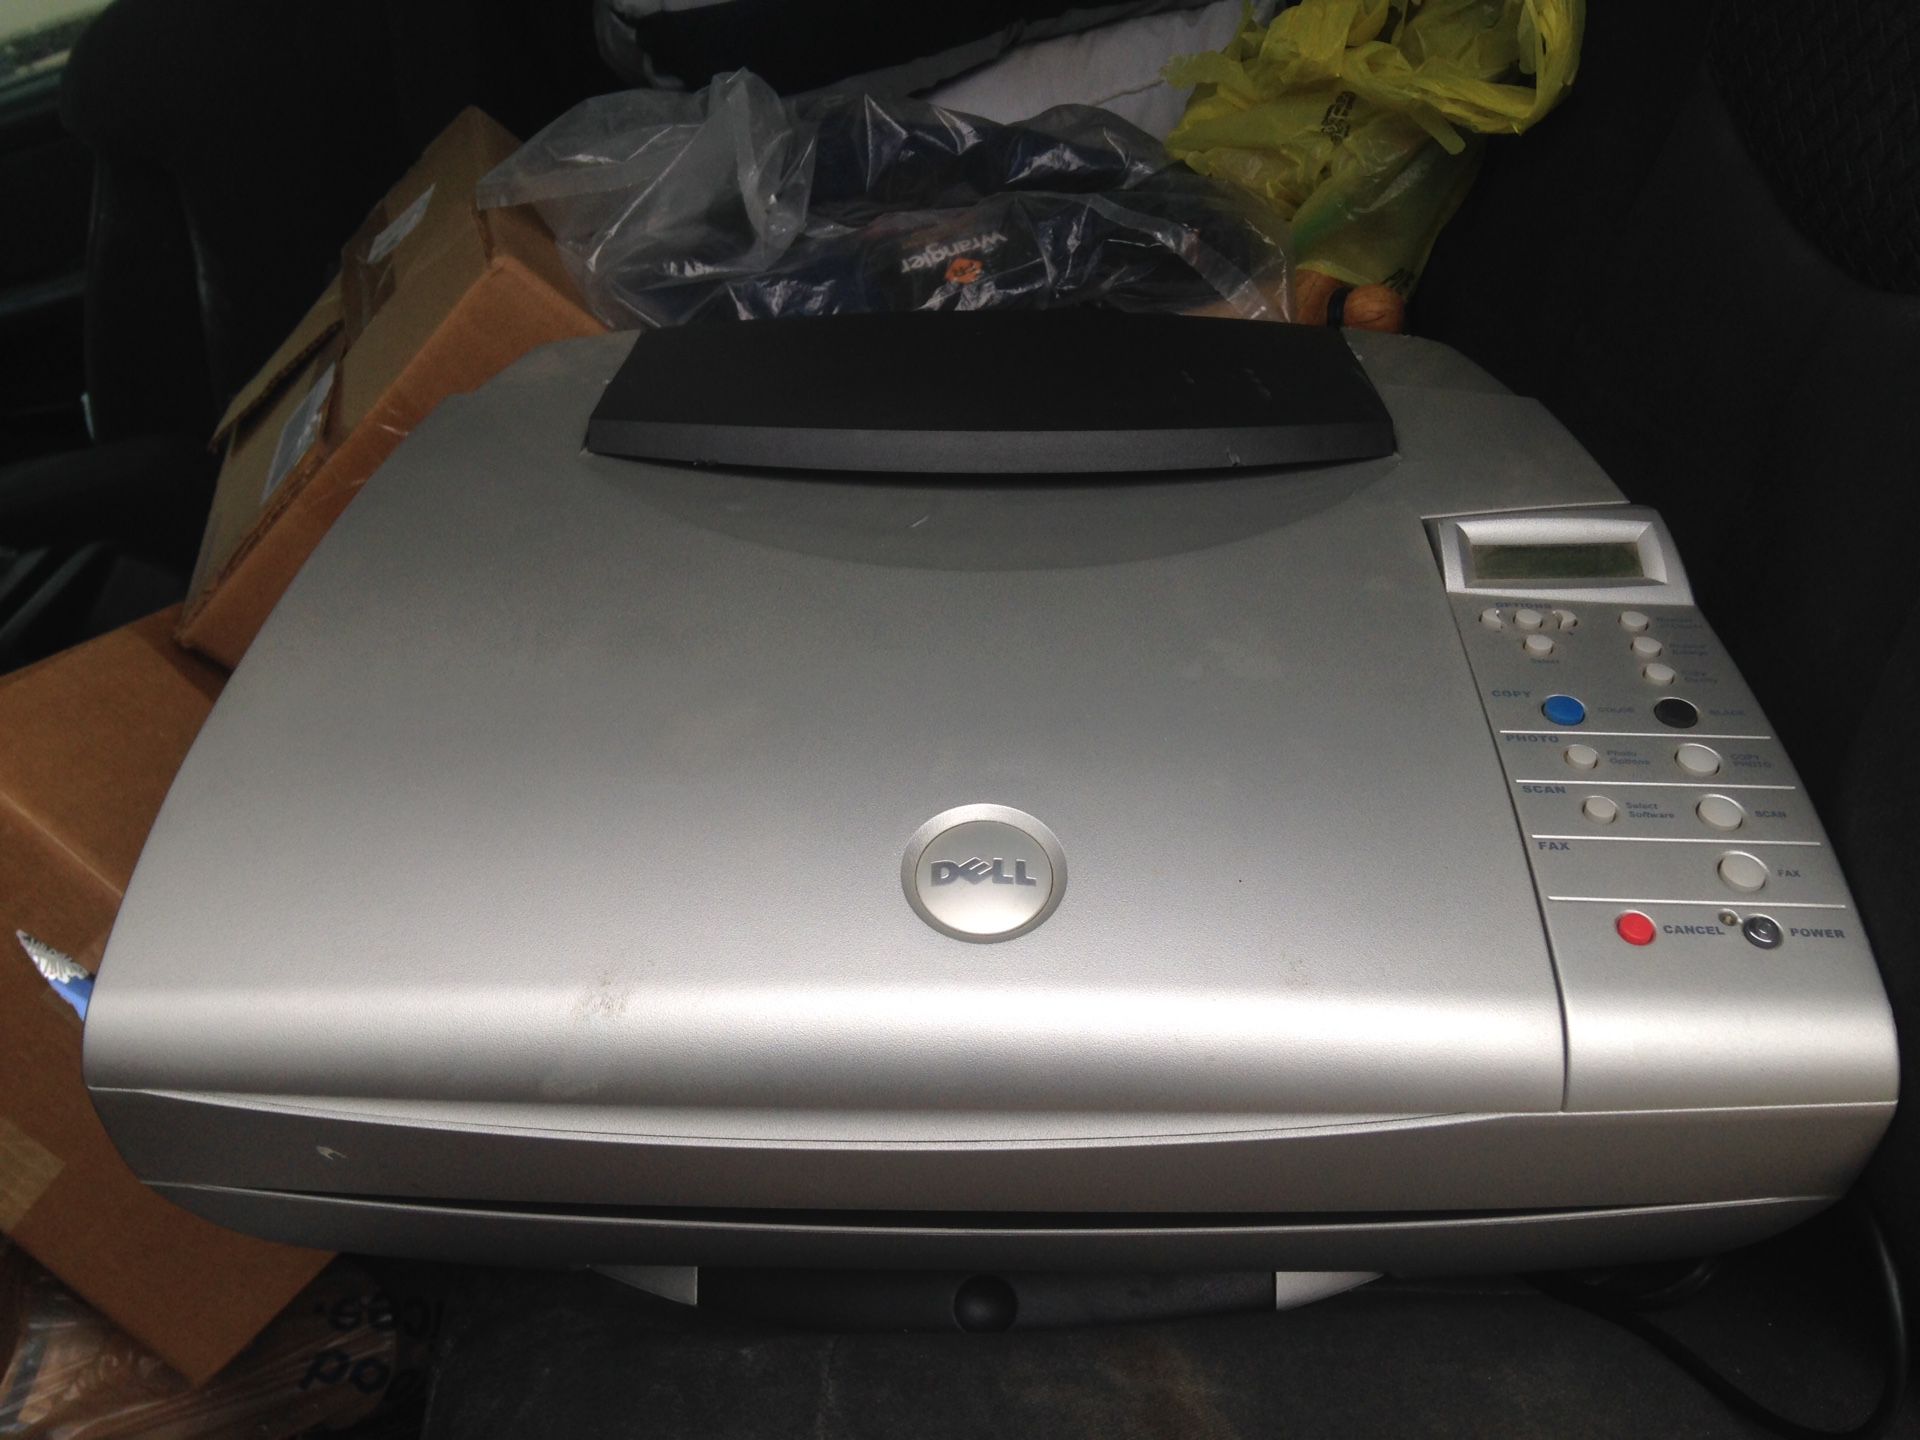 Dell Fax/Printer/ Copy machine